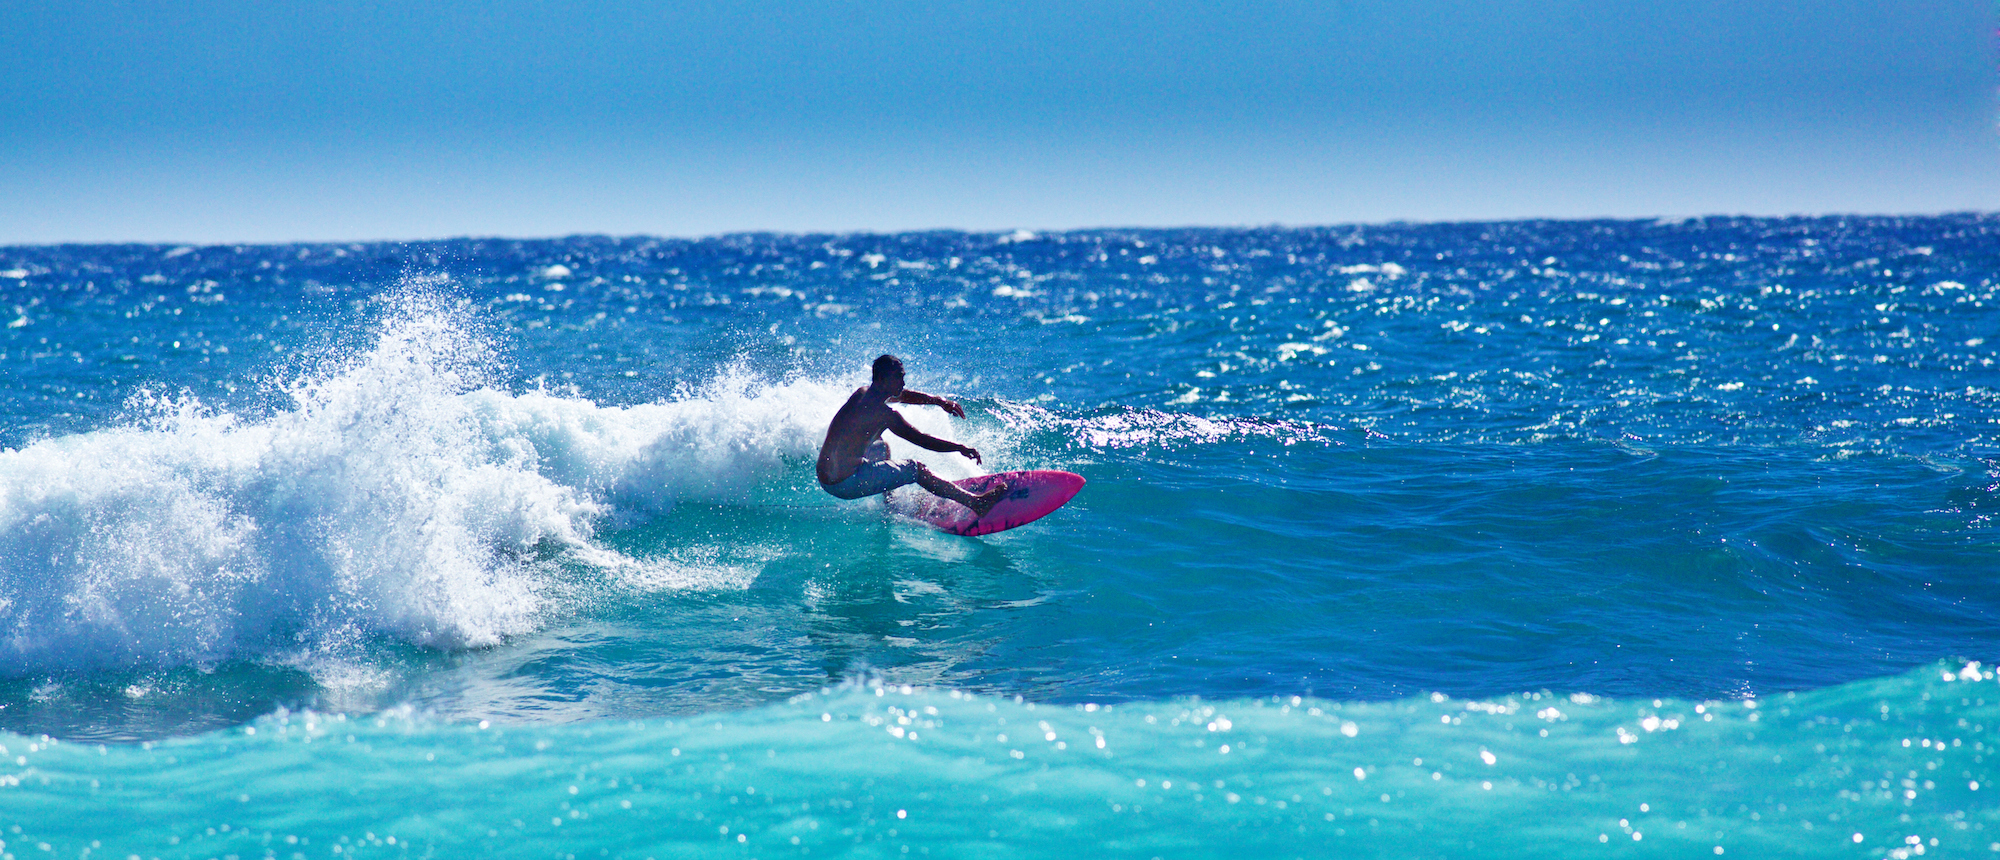 A local Hawaiian surfer surfing at Poipu Beach, Kauai, Hawaii.